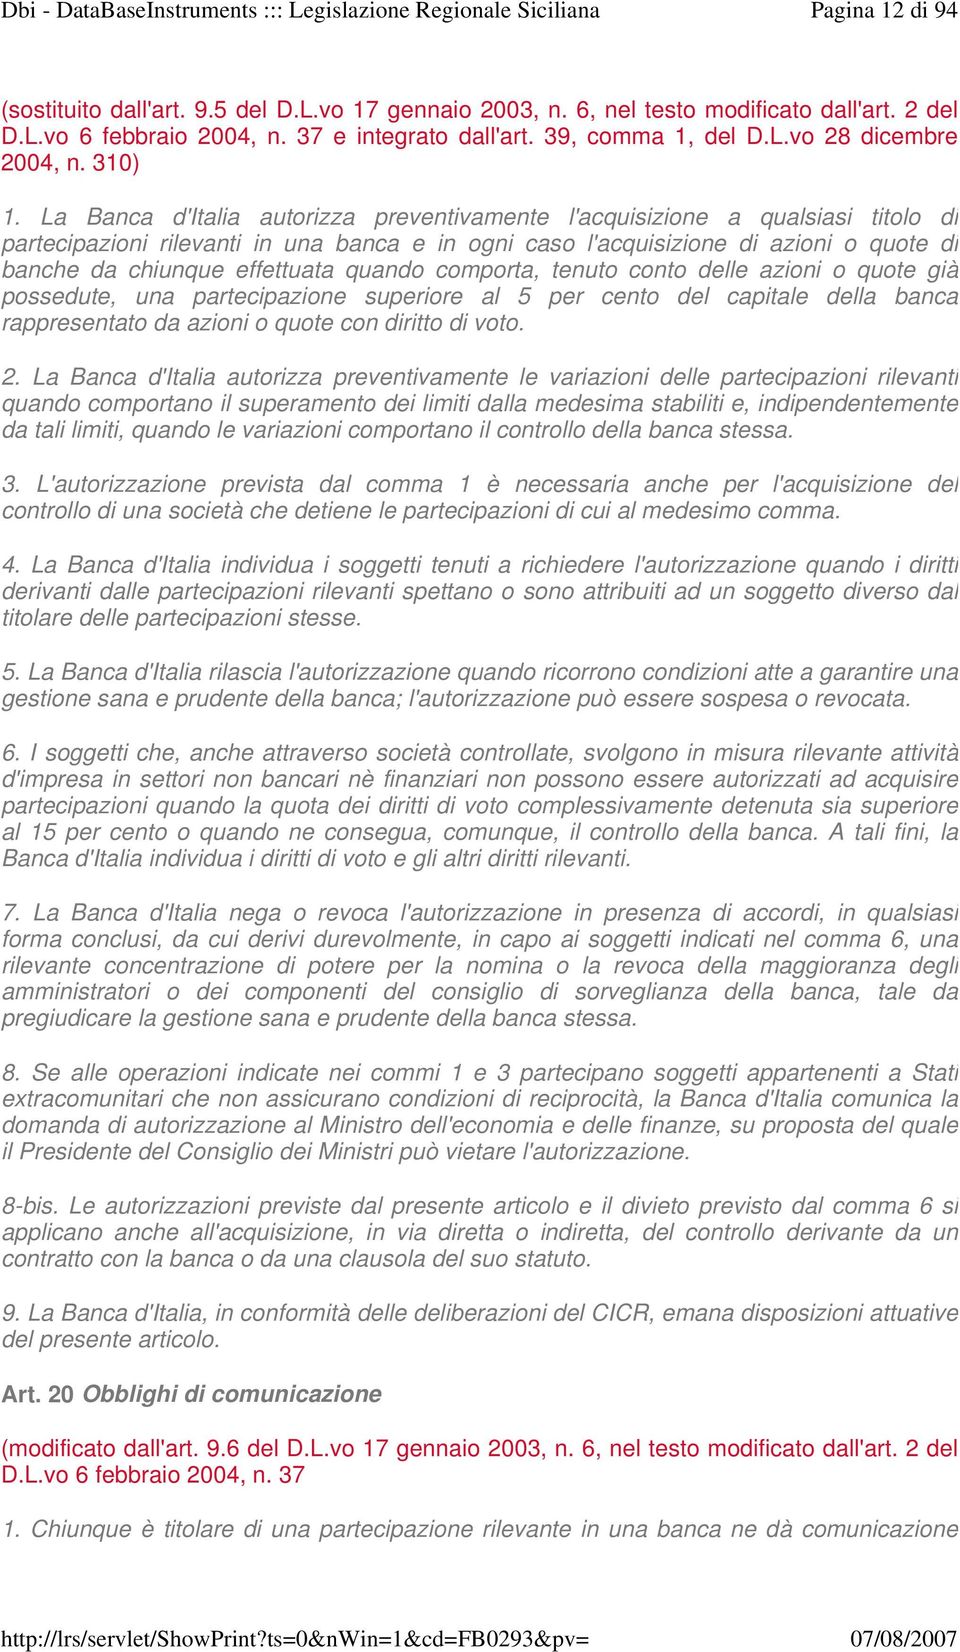 La Banca d'italia autorizza preventivamente l'acquisizione a qualsiasi titolo di partecipazioni rilevanti in una banca e in ogni caso l'acquisizione di azioni o quote di banche da chiunque effettuata